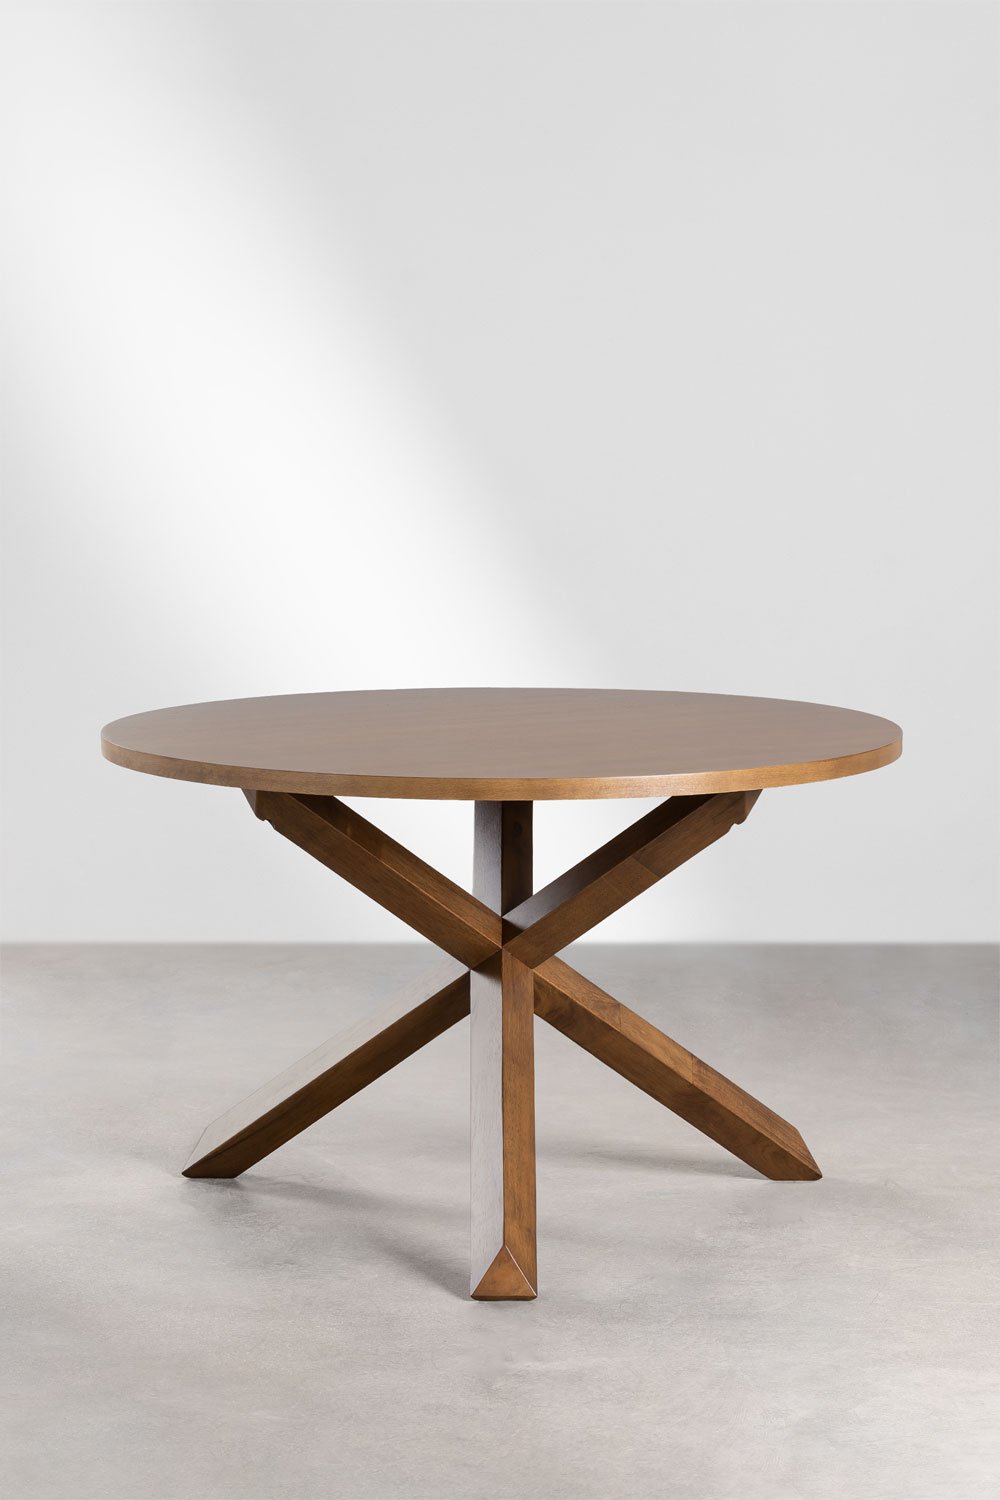 Tavolo da pranzo rotondo in MDF e legno (Ø120 cm) Mieren, immagine della galleria 1